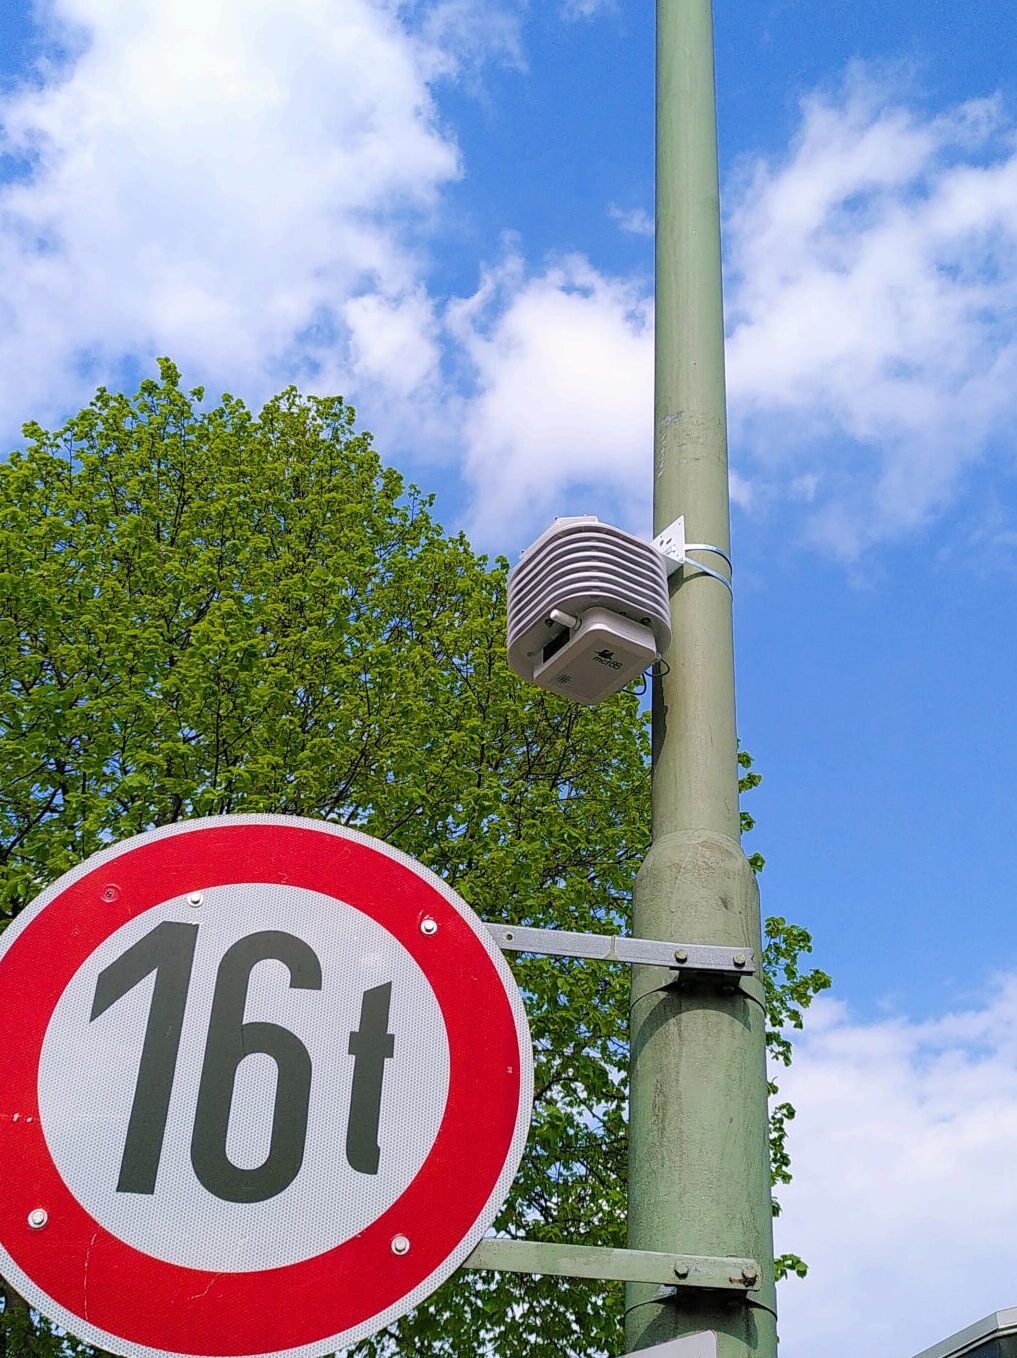 Ein Laternenmast mit einem Straßenschild mit der Aufschrift 16t, darüber ein kleiner grauer Kasten. Im Hintergrund ein blauer Himmel.